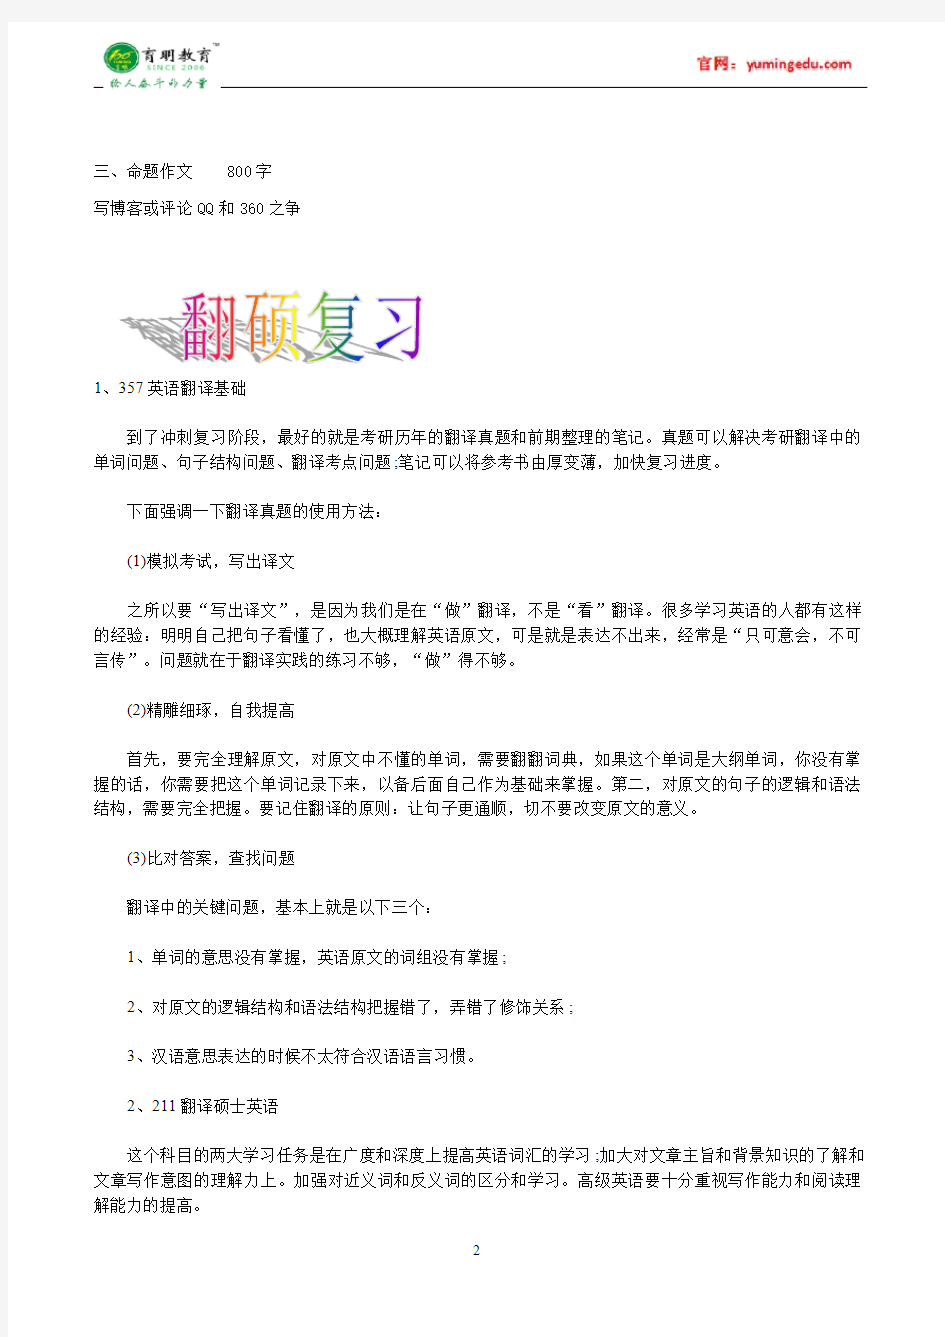 2016年北京大学汉语写作与百科知识考研真题,考研笔记